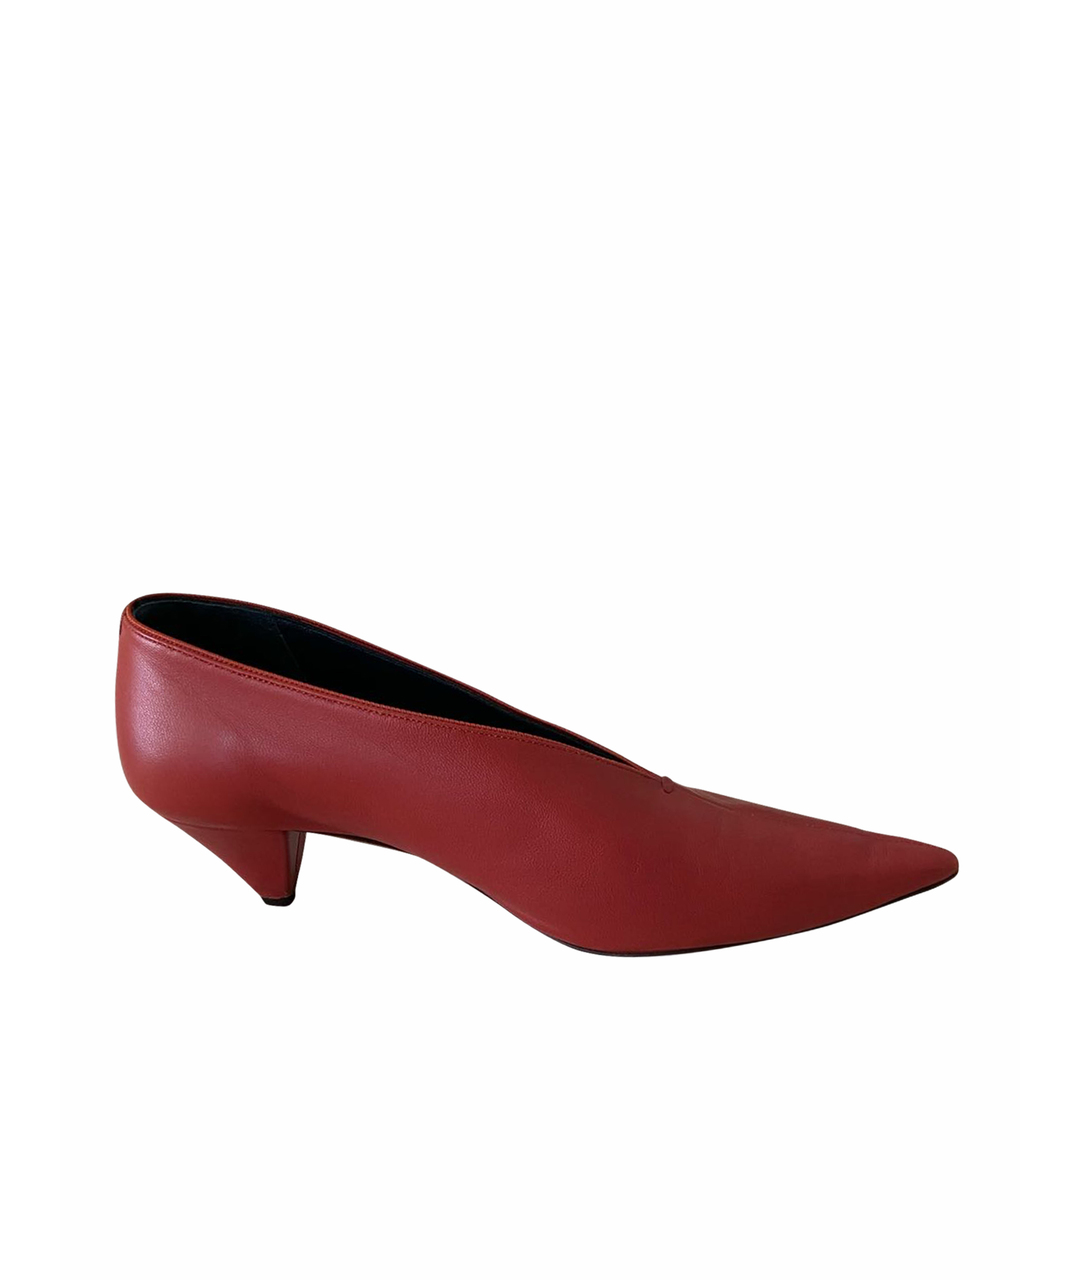 CELINE PRE-OWNED Красные кожаные туфли, фото 1